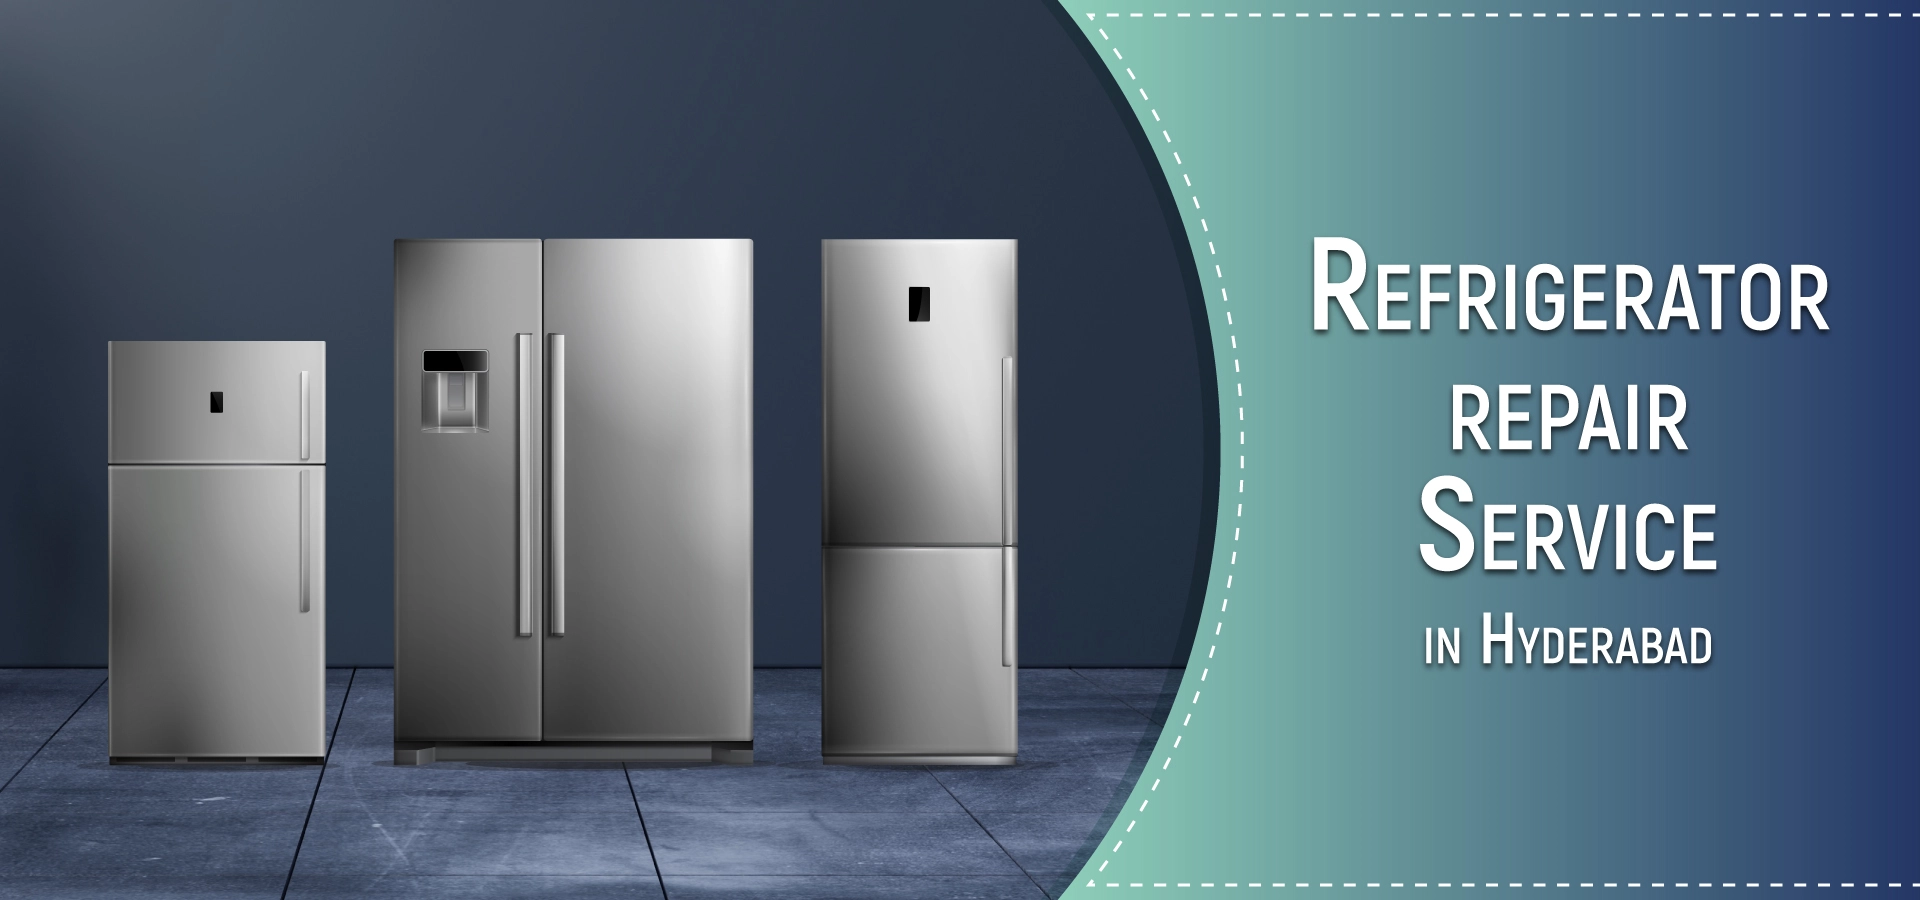 Refrigerator repair services in hyderabad